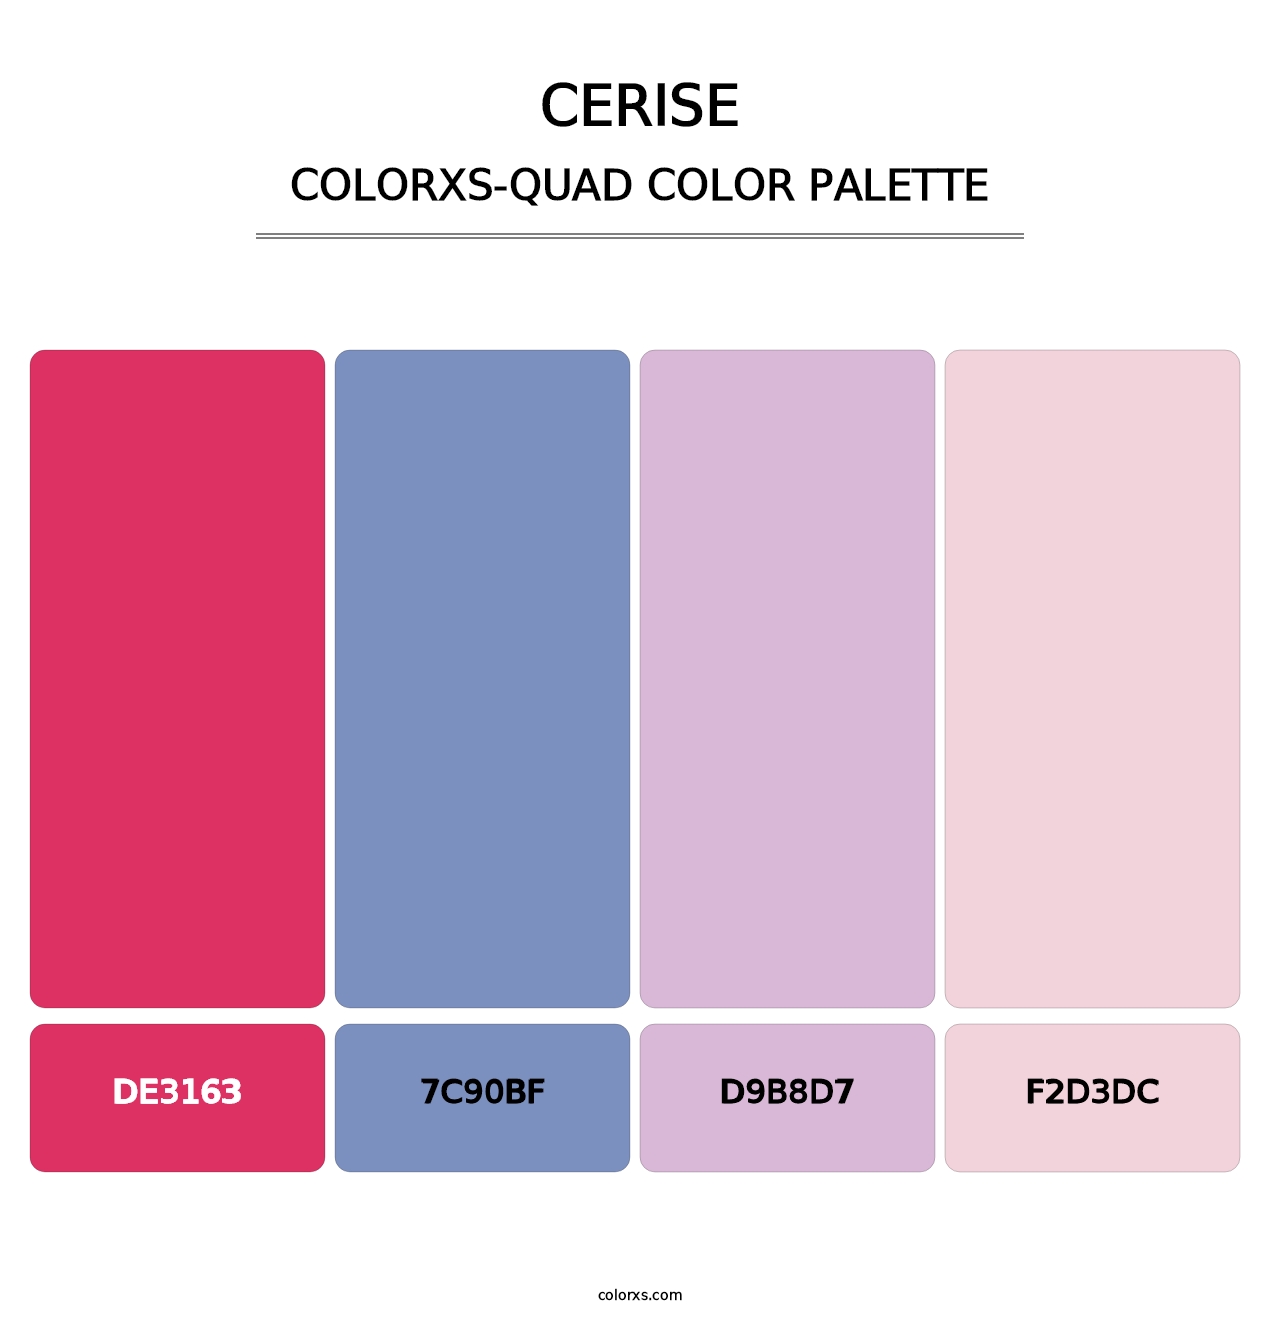 Cerise - Colorxs Quad Palette